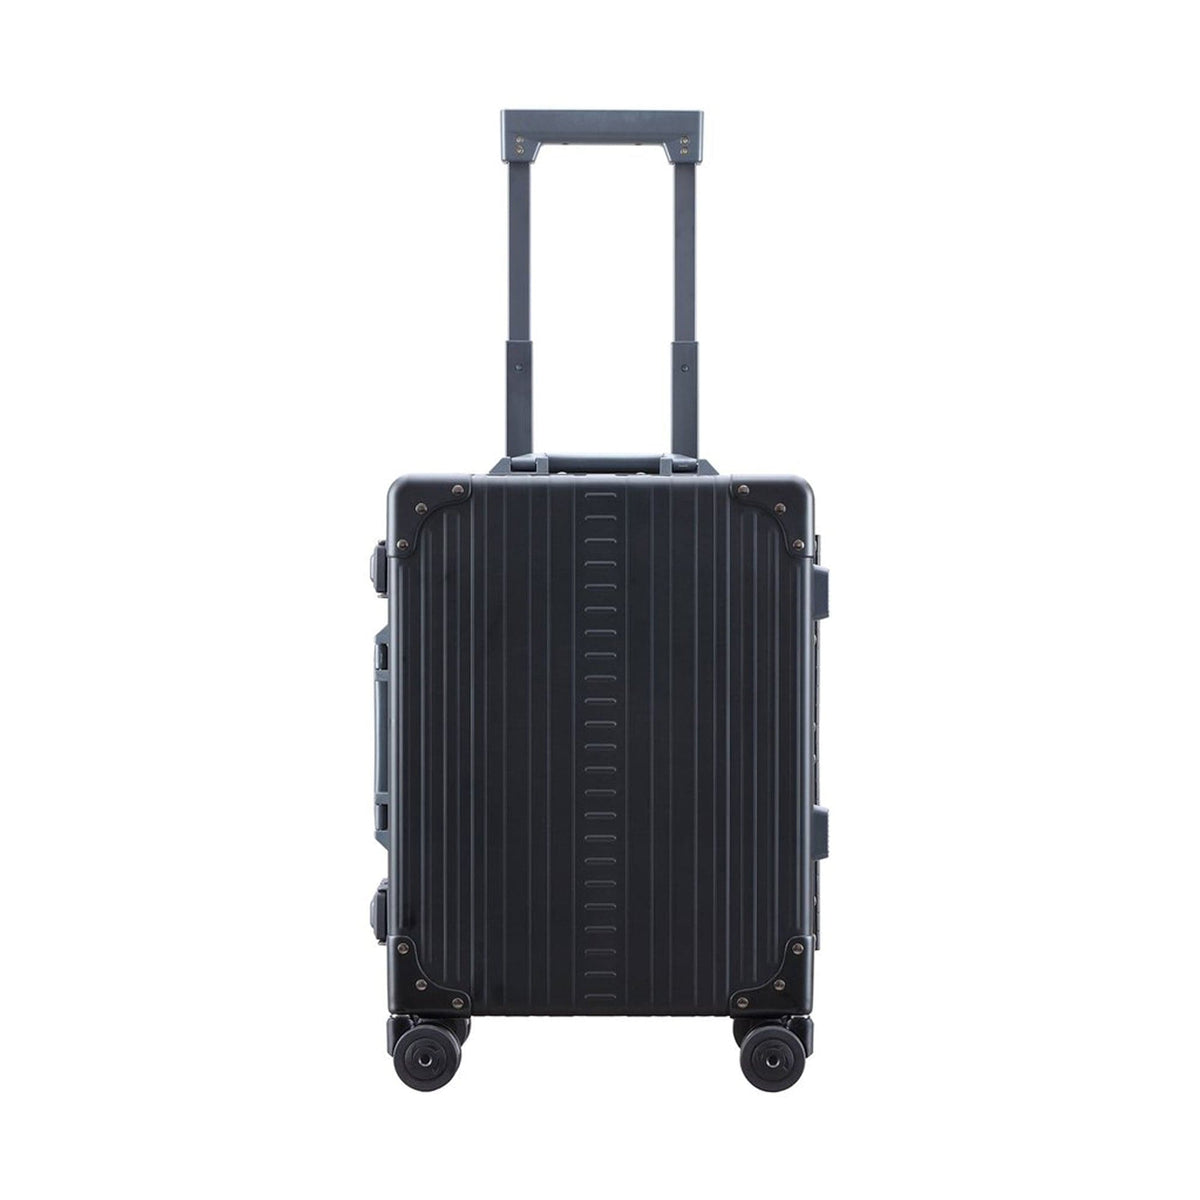 Aleon 19" Aluminum Hardside International Carry-On Luggage